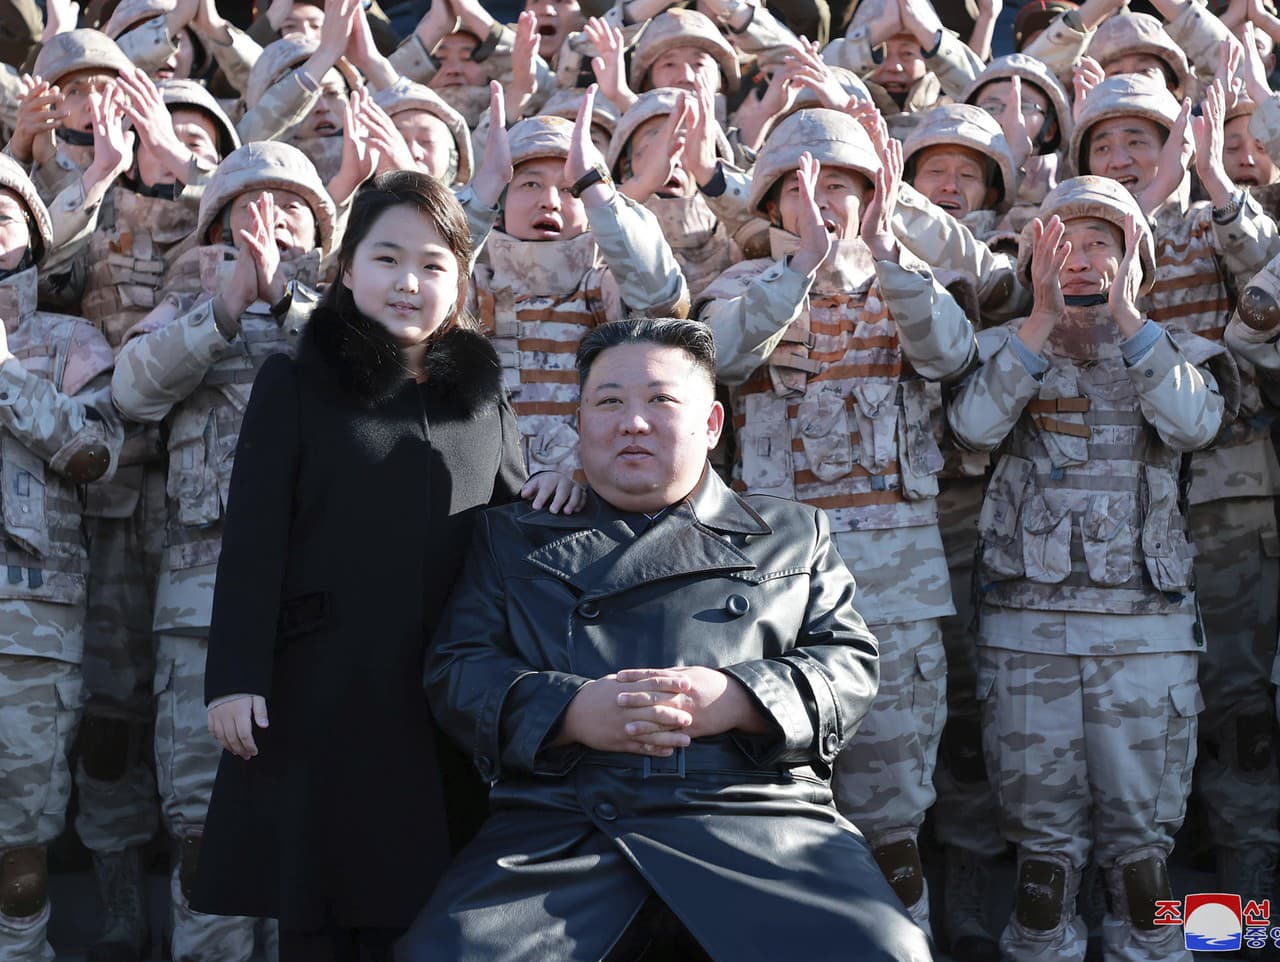 Kim Čong-un pózuje s dcérou pri predstaviteľoch armády.